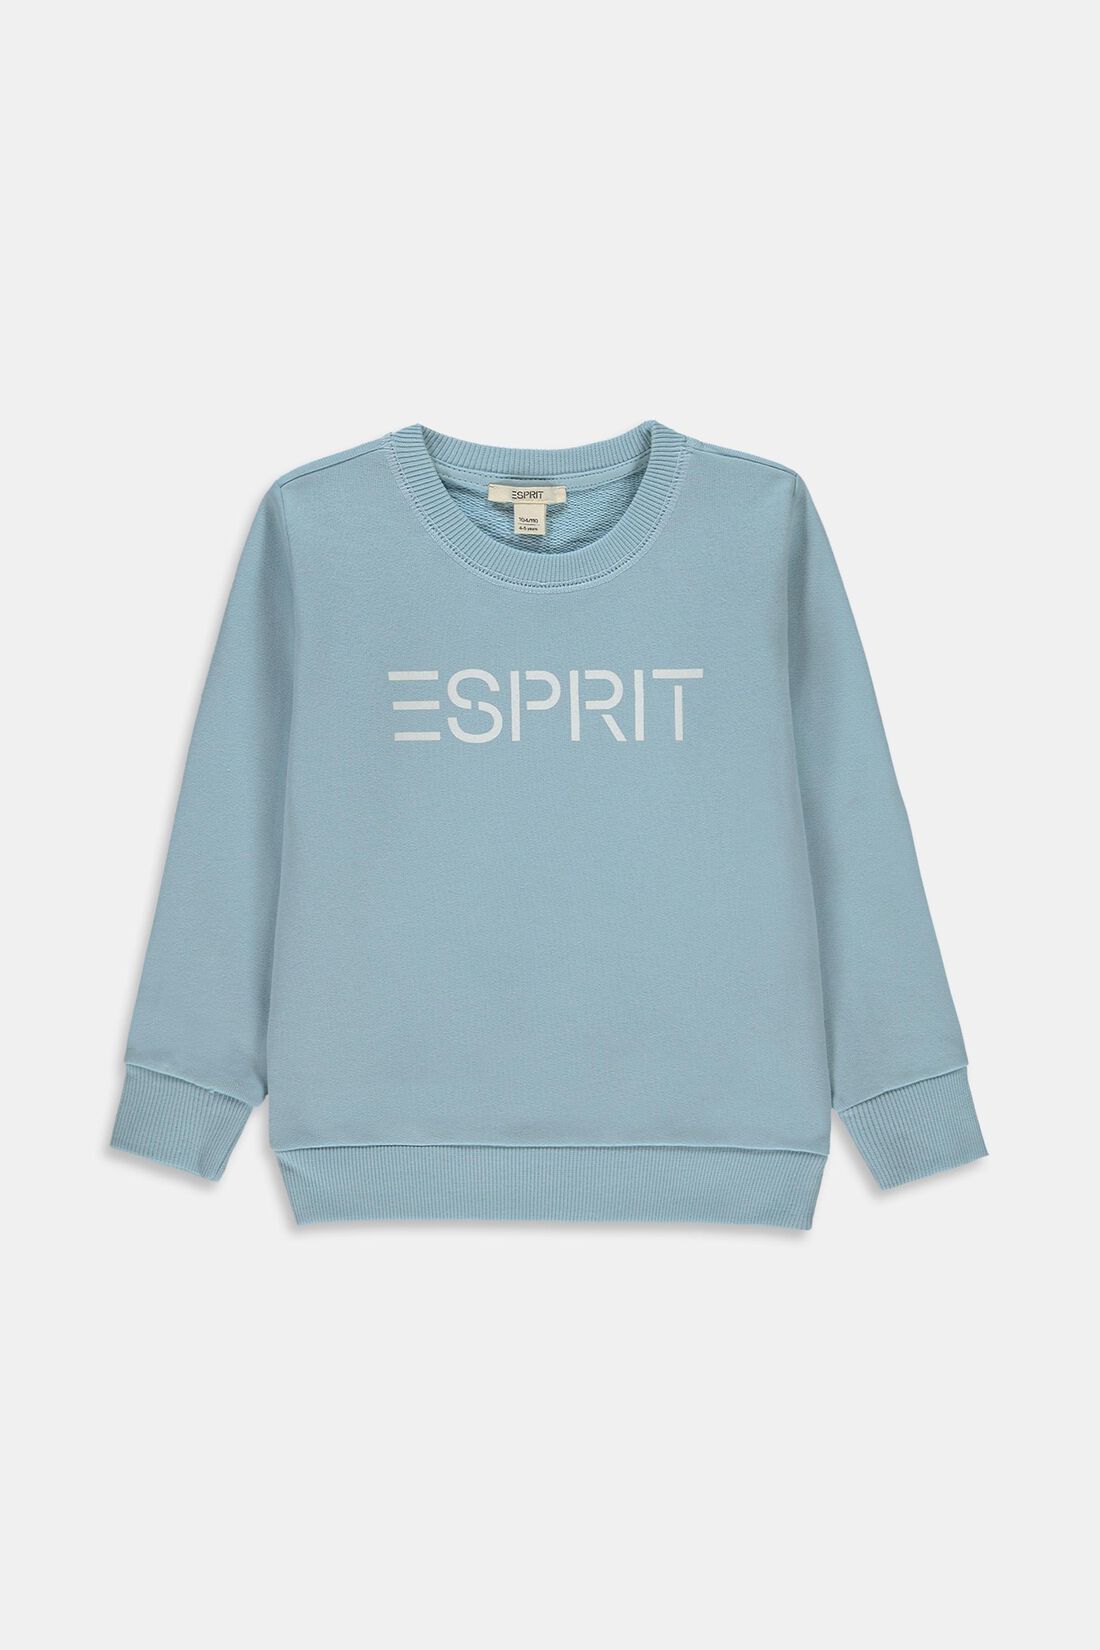 ESPRIT - Logo sweatshirt in 100% cotton at our online shop